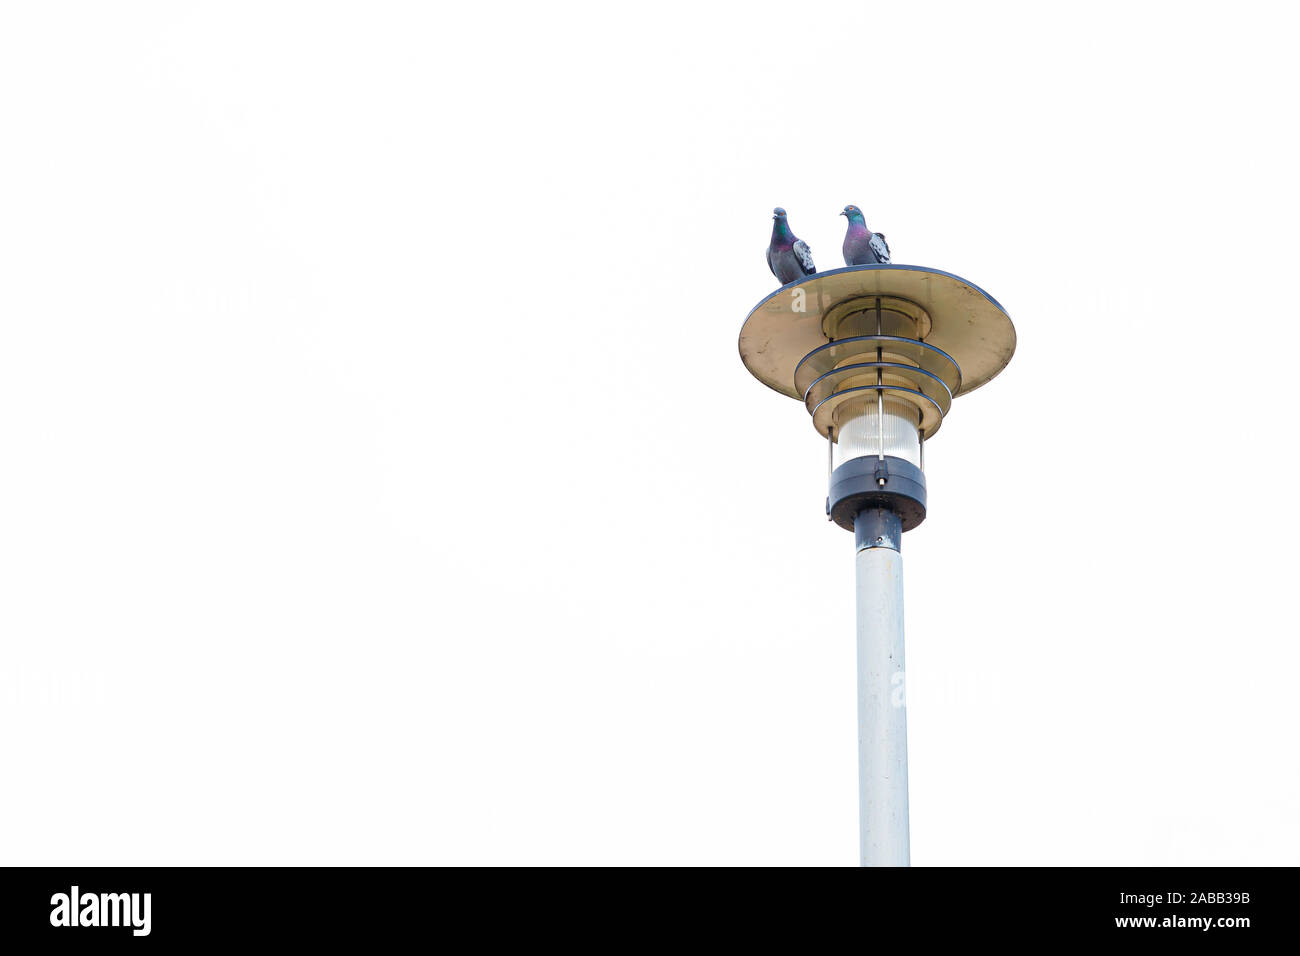 Silhouette einer Straßenlaterne und einen sitzenden Vogel gegen einen weissen Himmel. Zwei Tauben sitzen auf einer strassenlaterne. Stockfoto